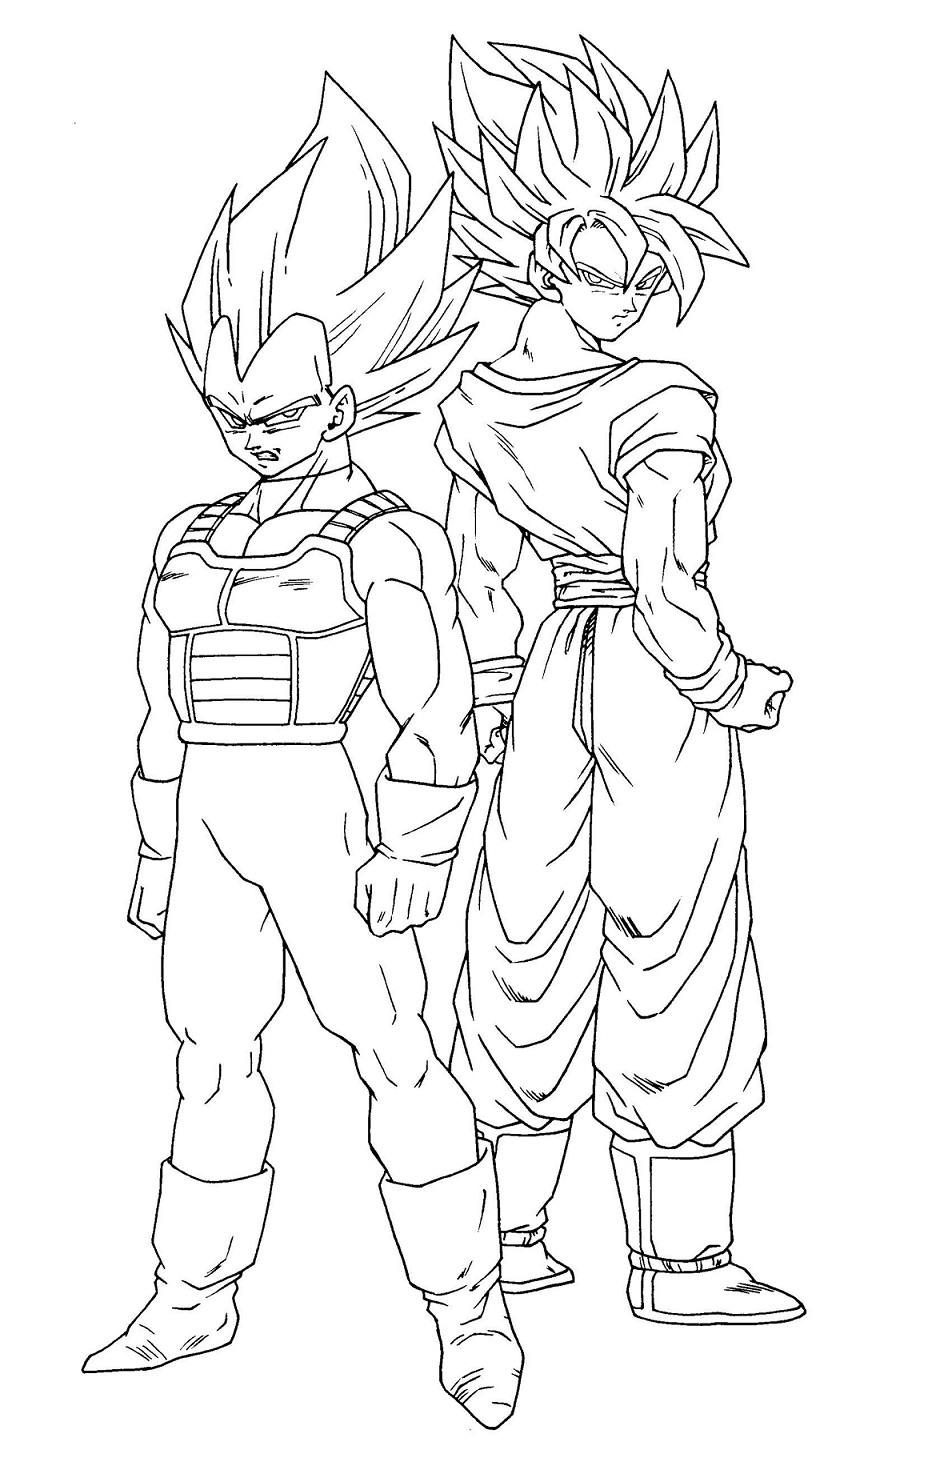 Awesome Goku And Vegeta